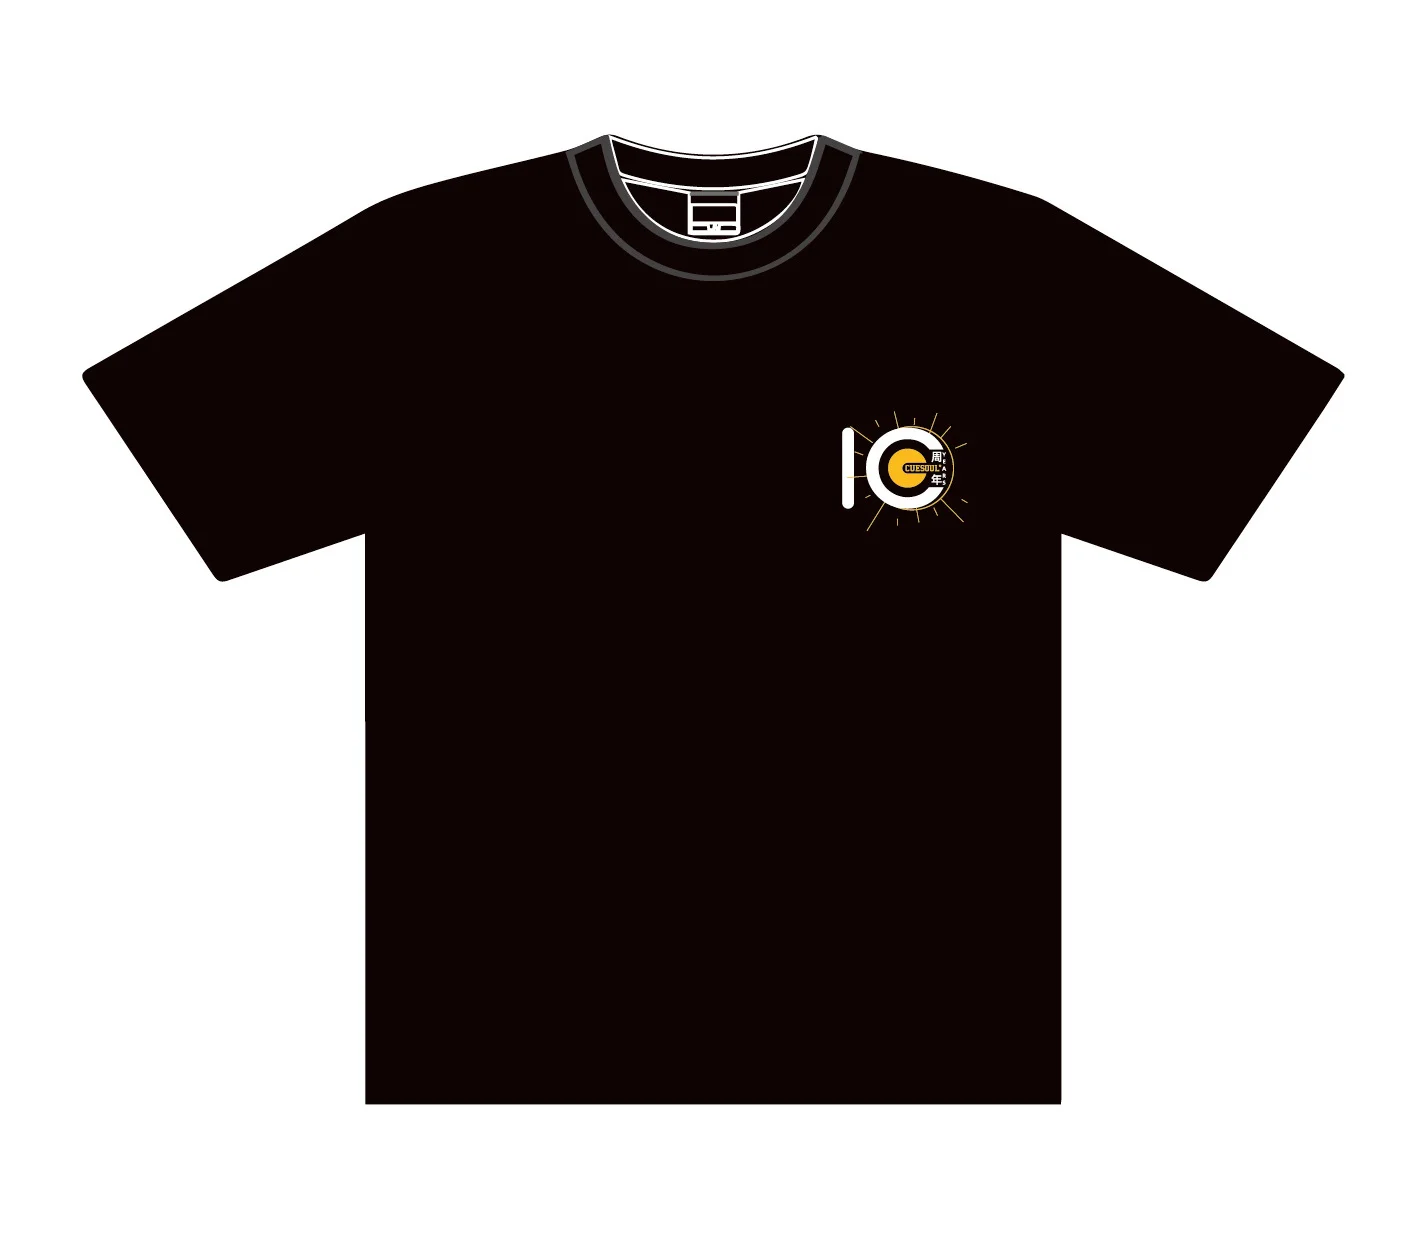 CUESOUL t-shirt personalizzata per il decimo anniversario